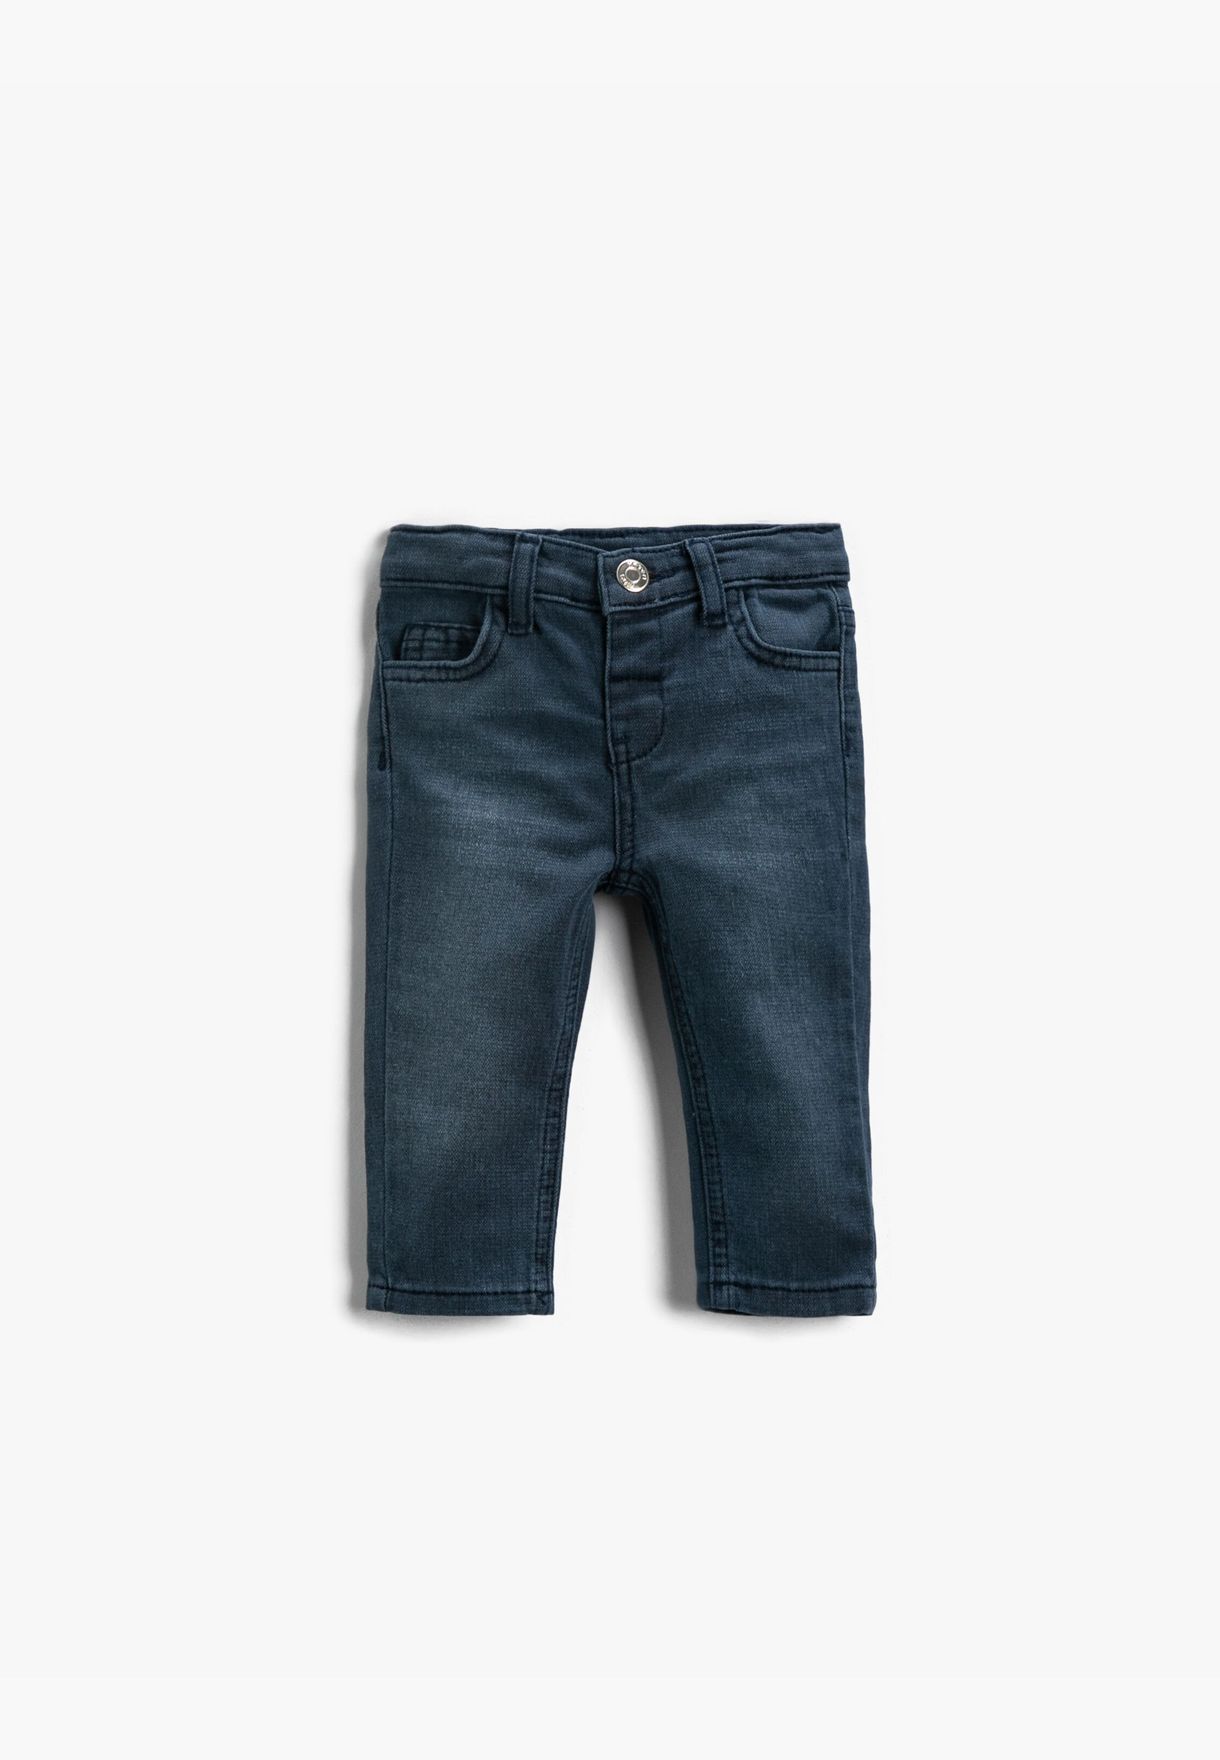 Jeans Slim Fit Pocket Detailed